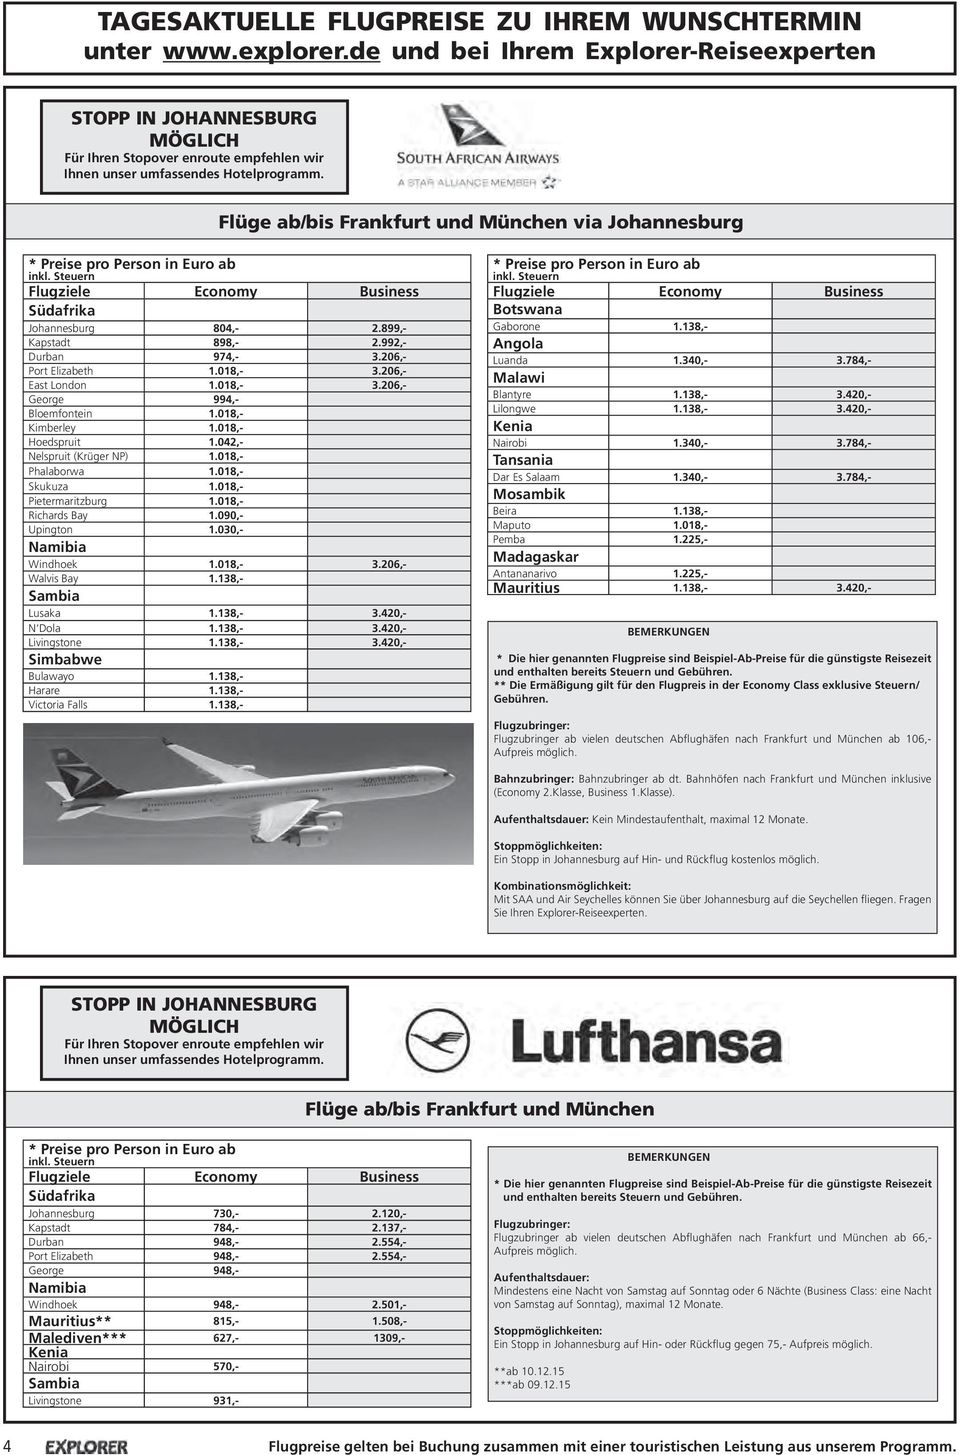 Flüge ab/bis Frankfurt und München via Johannesburg * Preise pro Person in Euro ab inkl. Steuern Flugziele Economy Business Südafrika Johannesburg 804,- 2.899,- Kapstadt 898,- 2.992,- Durban 974,- 3.